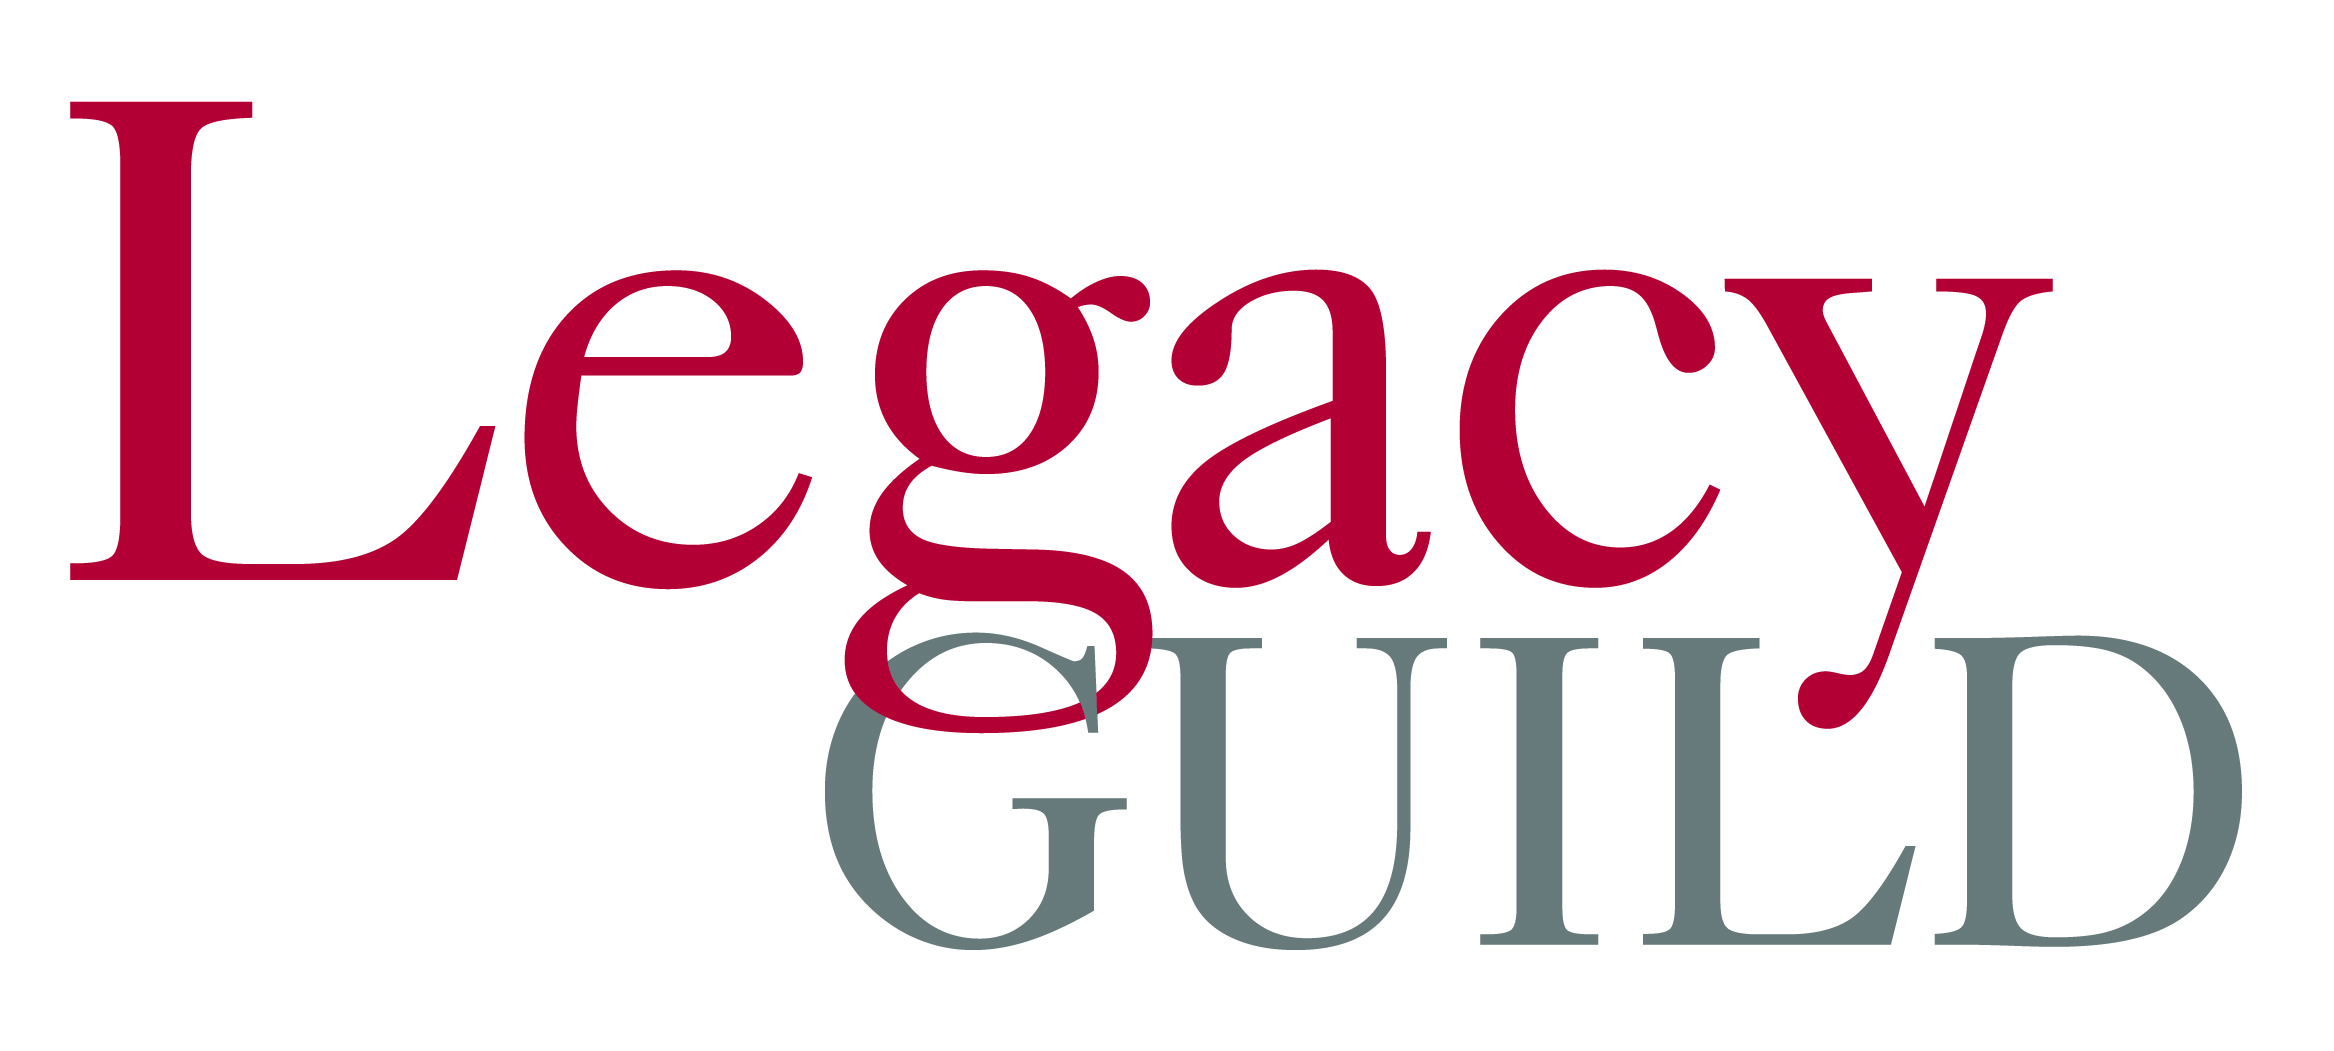 FDU Legacy Guild Logo-01